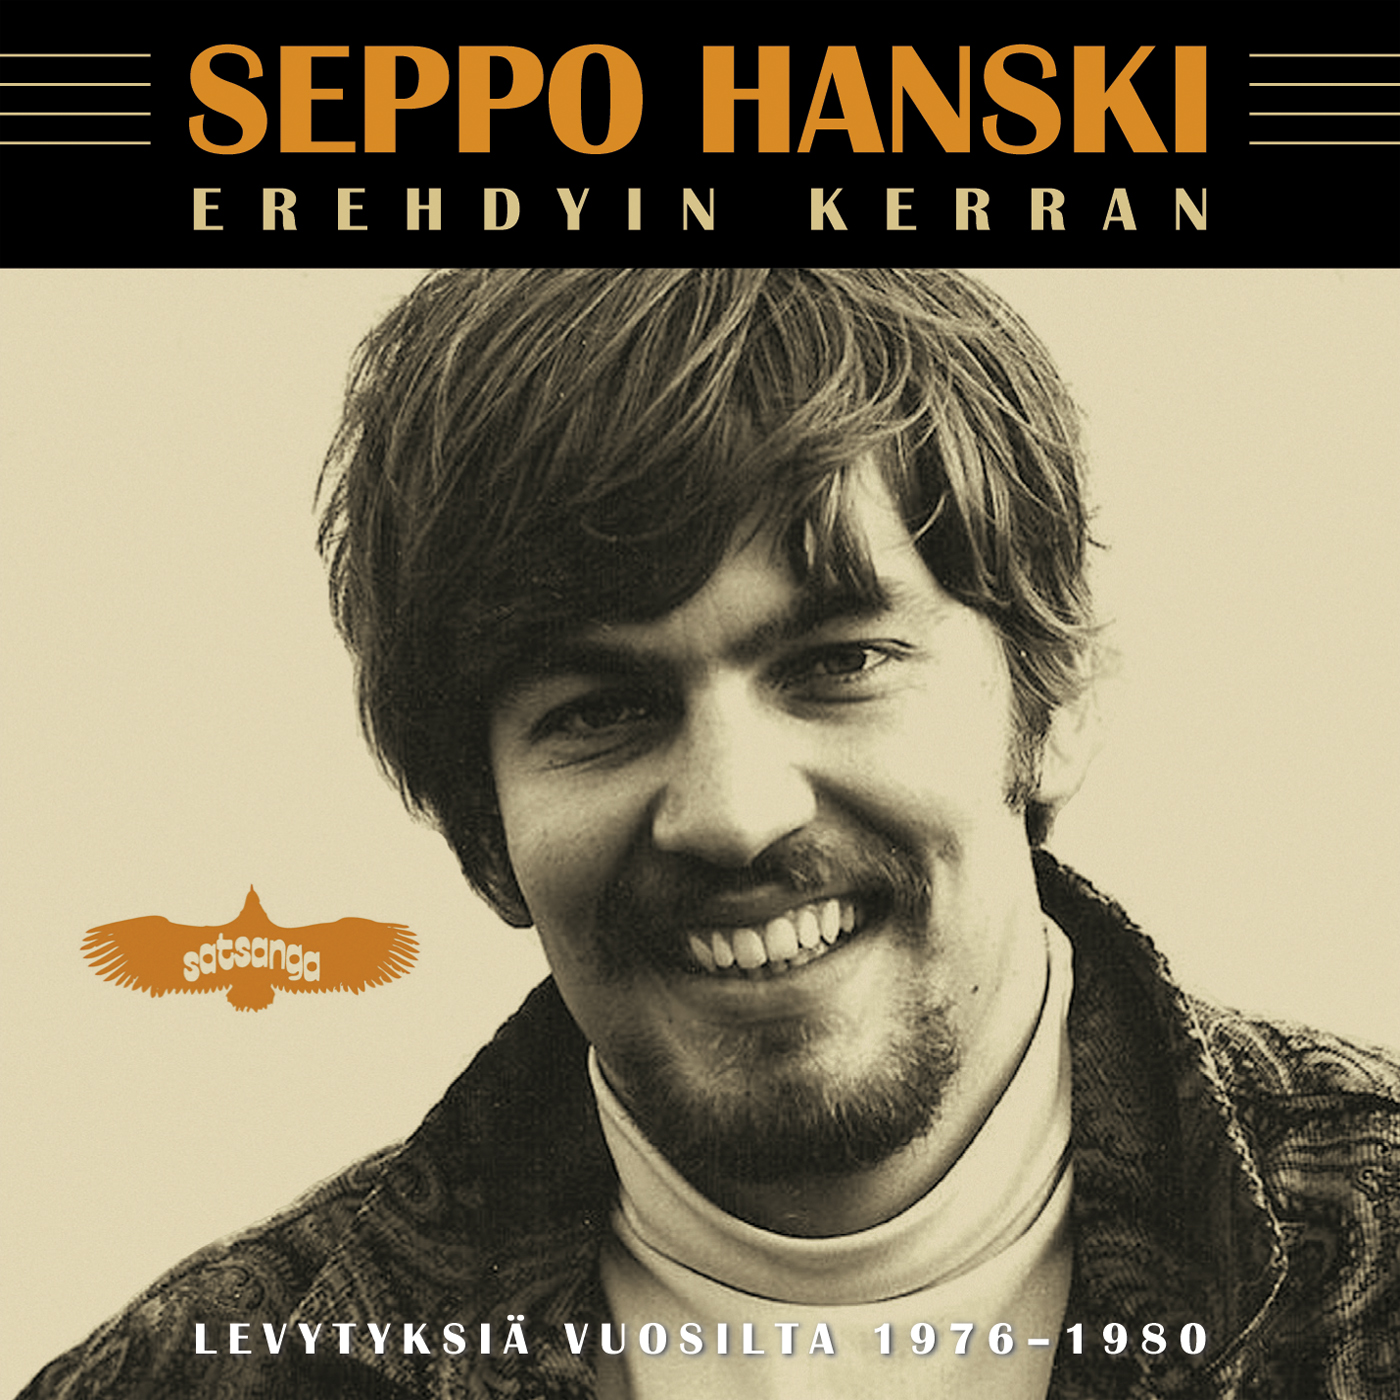 Seppo Hanski - Erehdyin kerran - Levytyksi  vuosil - CD